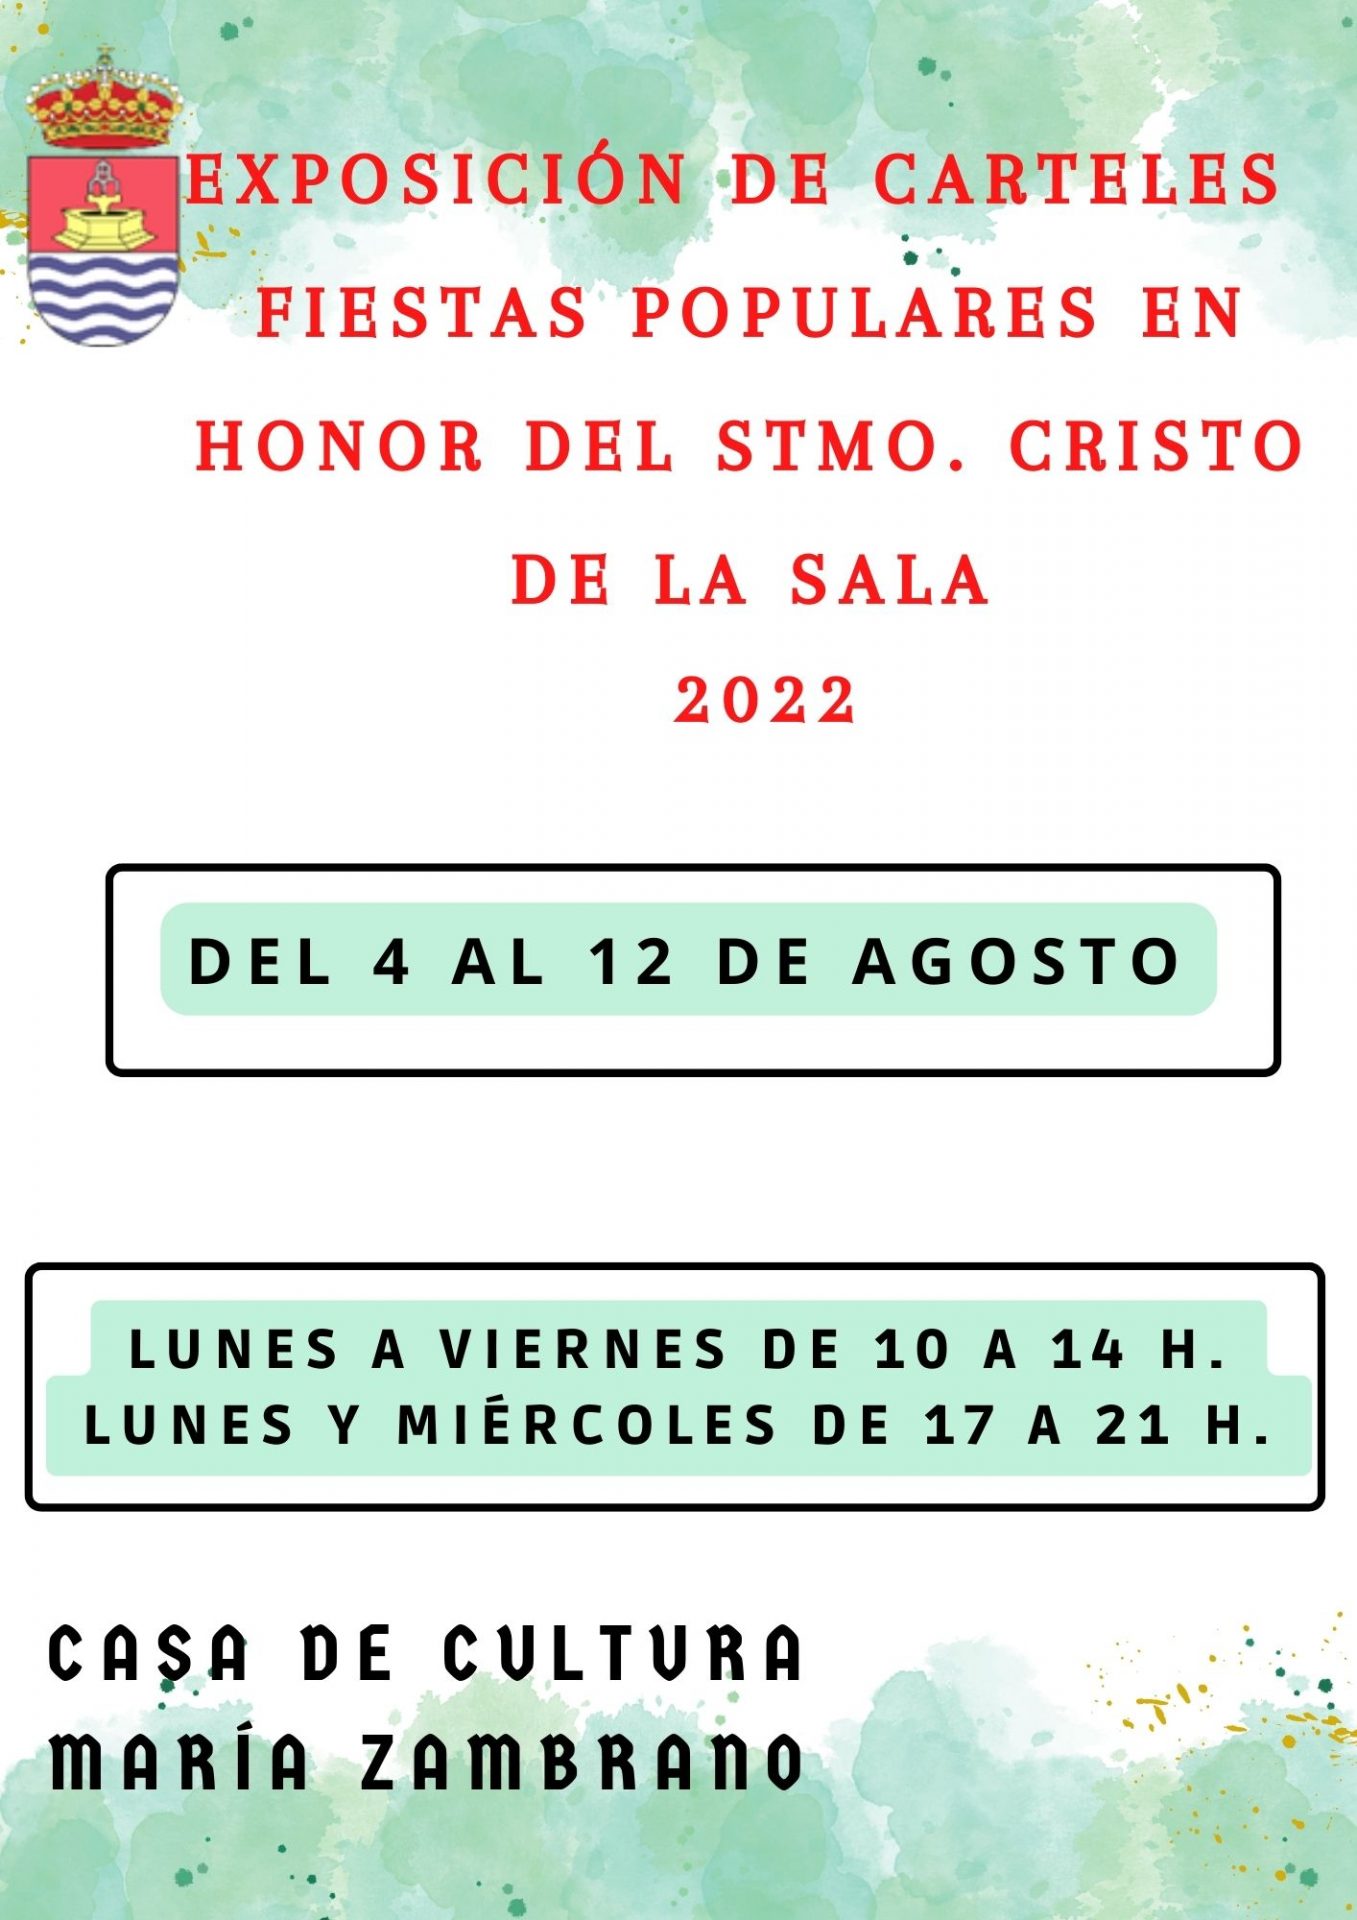 Exposición de carteles de las Fiestas Populares en honor del Stmo. Cristo de la Sala 2022